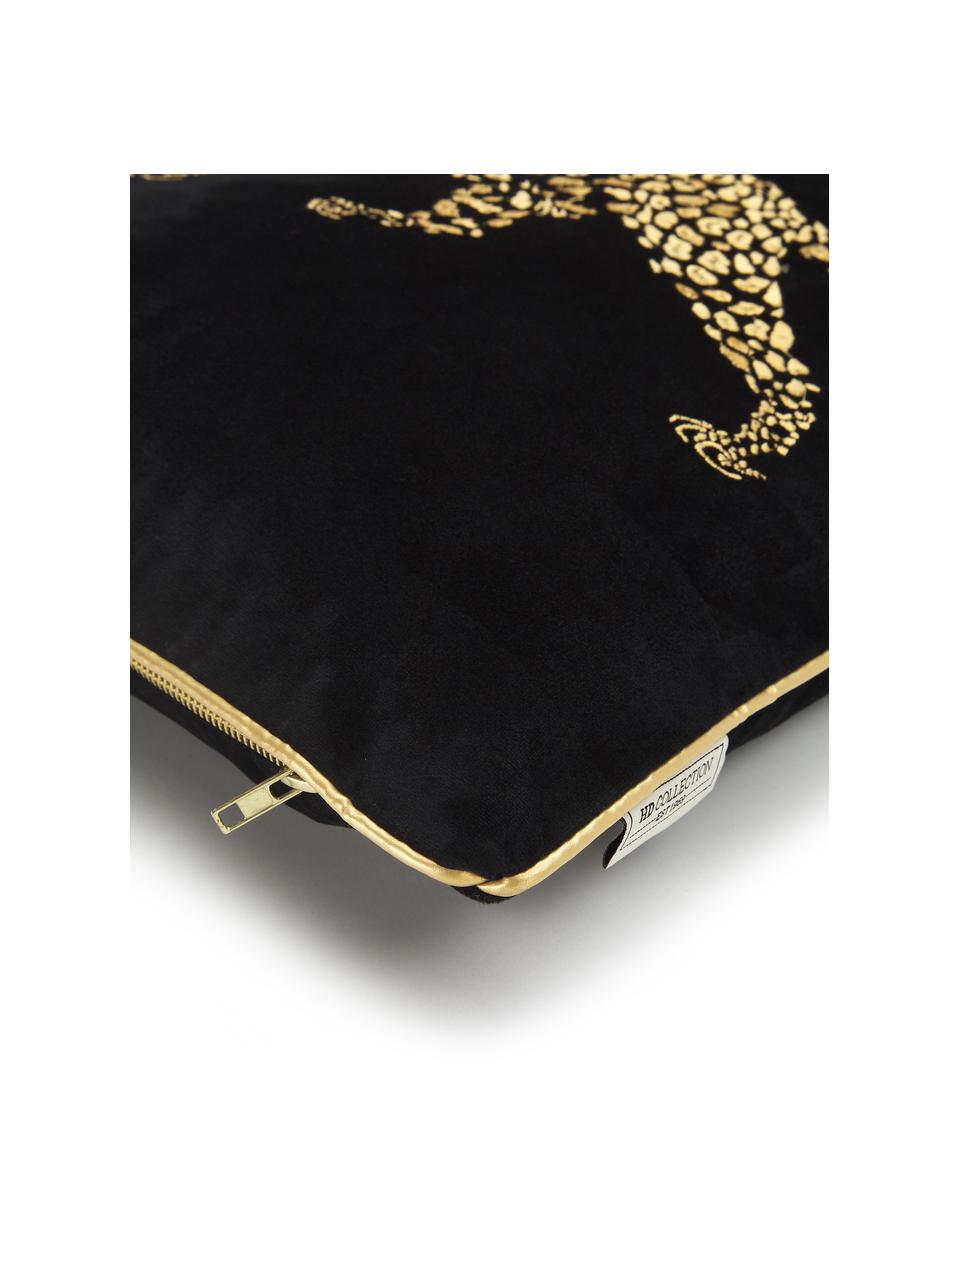 Poduszka z aksamitu z haftem i wypełnieniem Majestic Leopard, 100% aksamit (poliester), Czarny, odcienie złotego, S 45 x D 45 cm